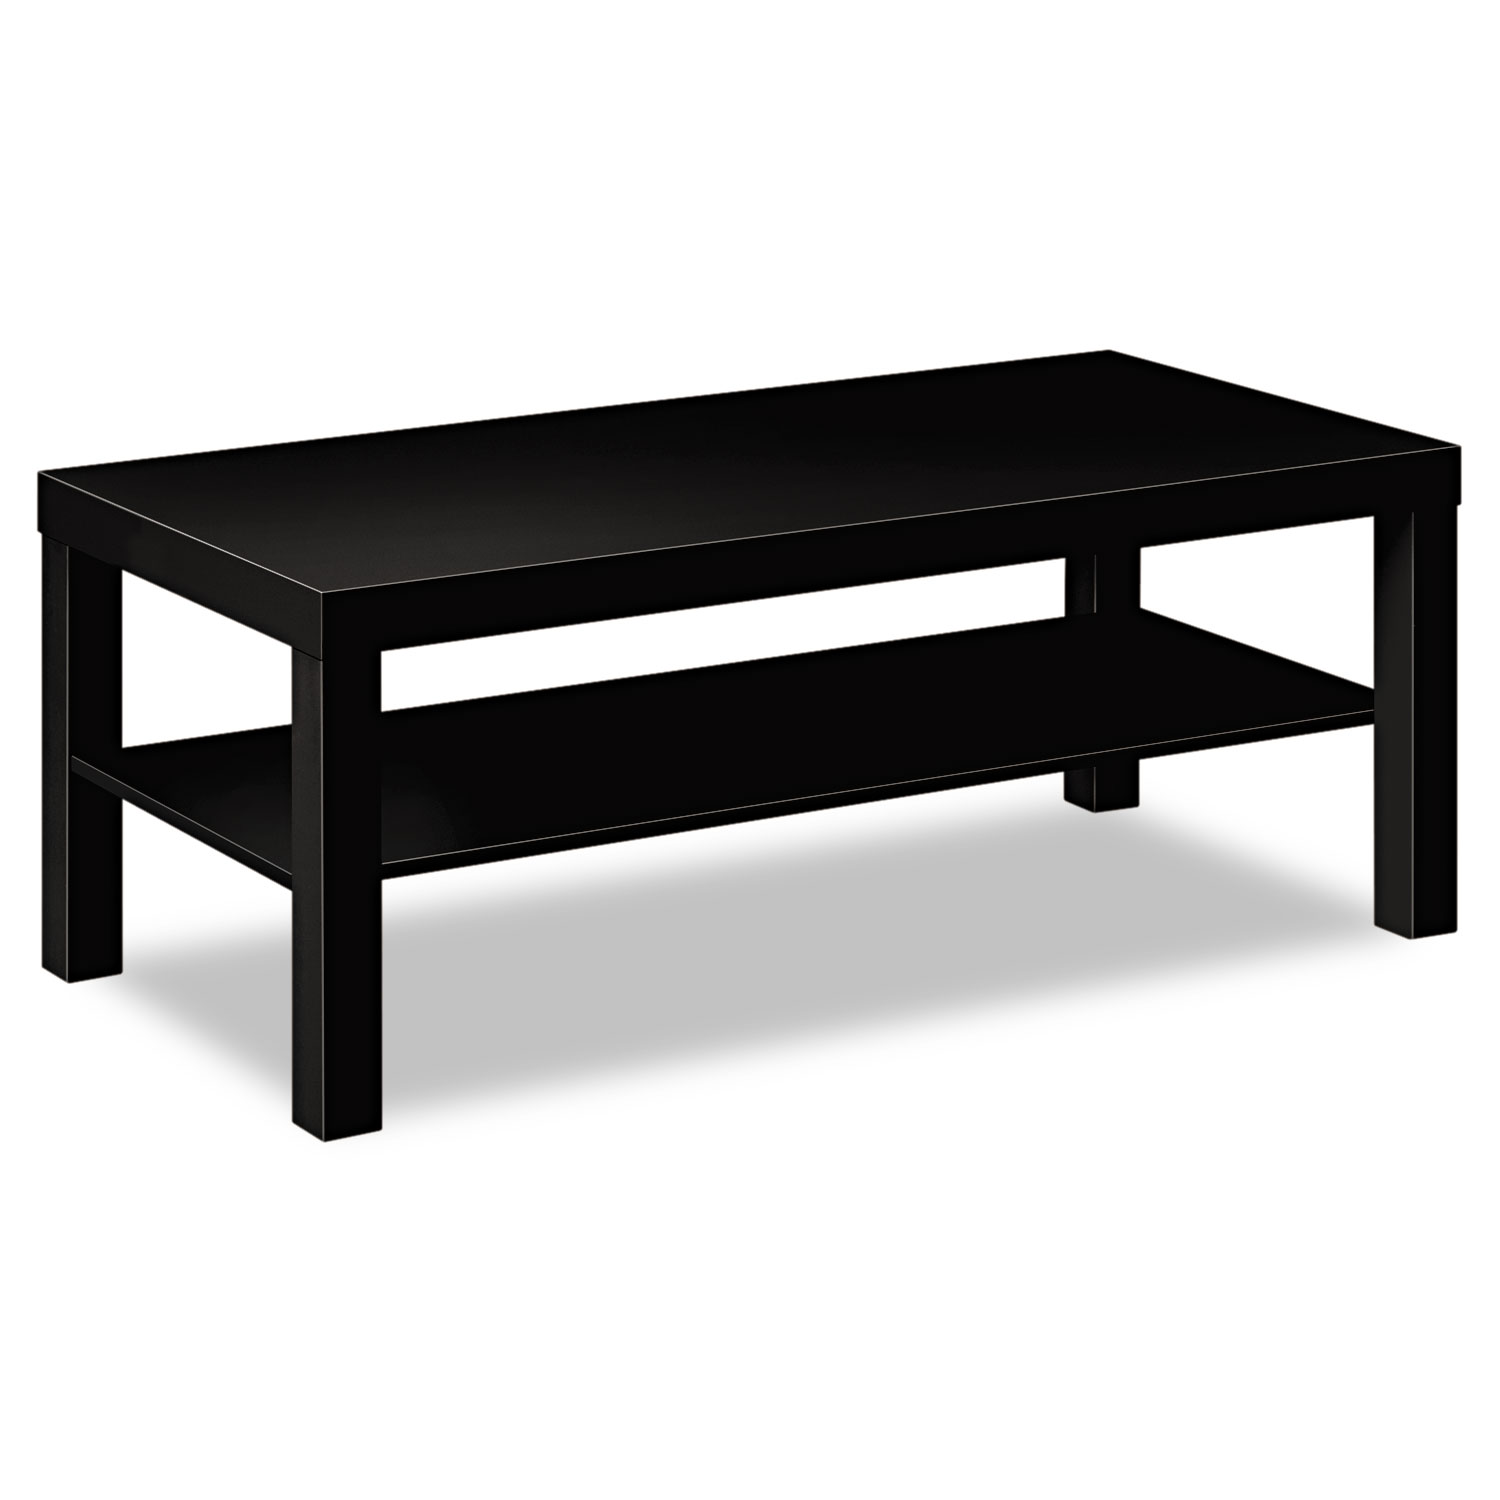  HON HBLH3160.P Laminate Occasional Table, 42w x 20d x 16h, Black (BSXBLH3160P) 